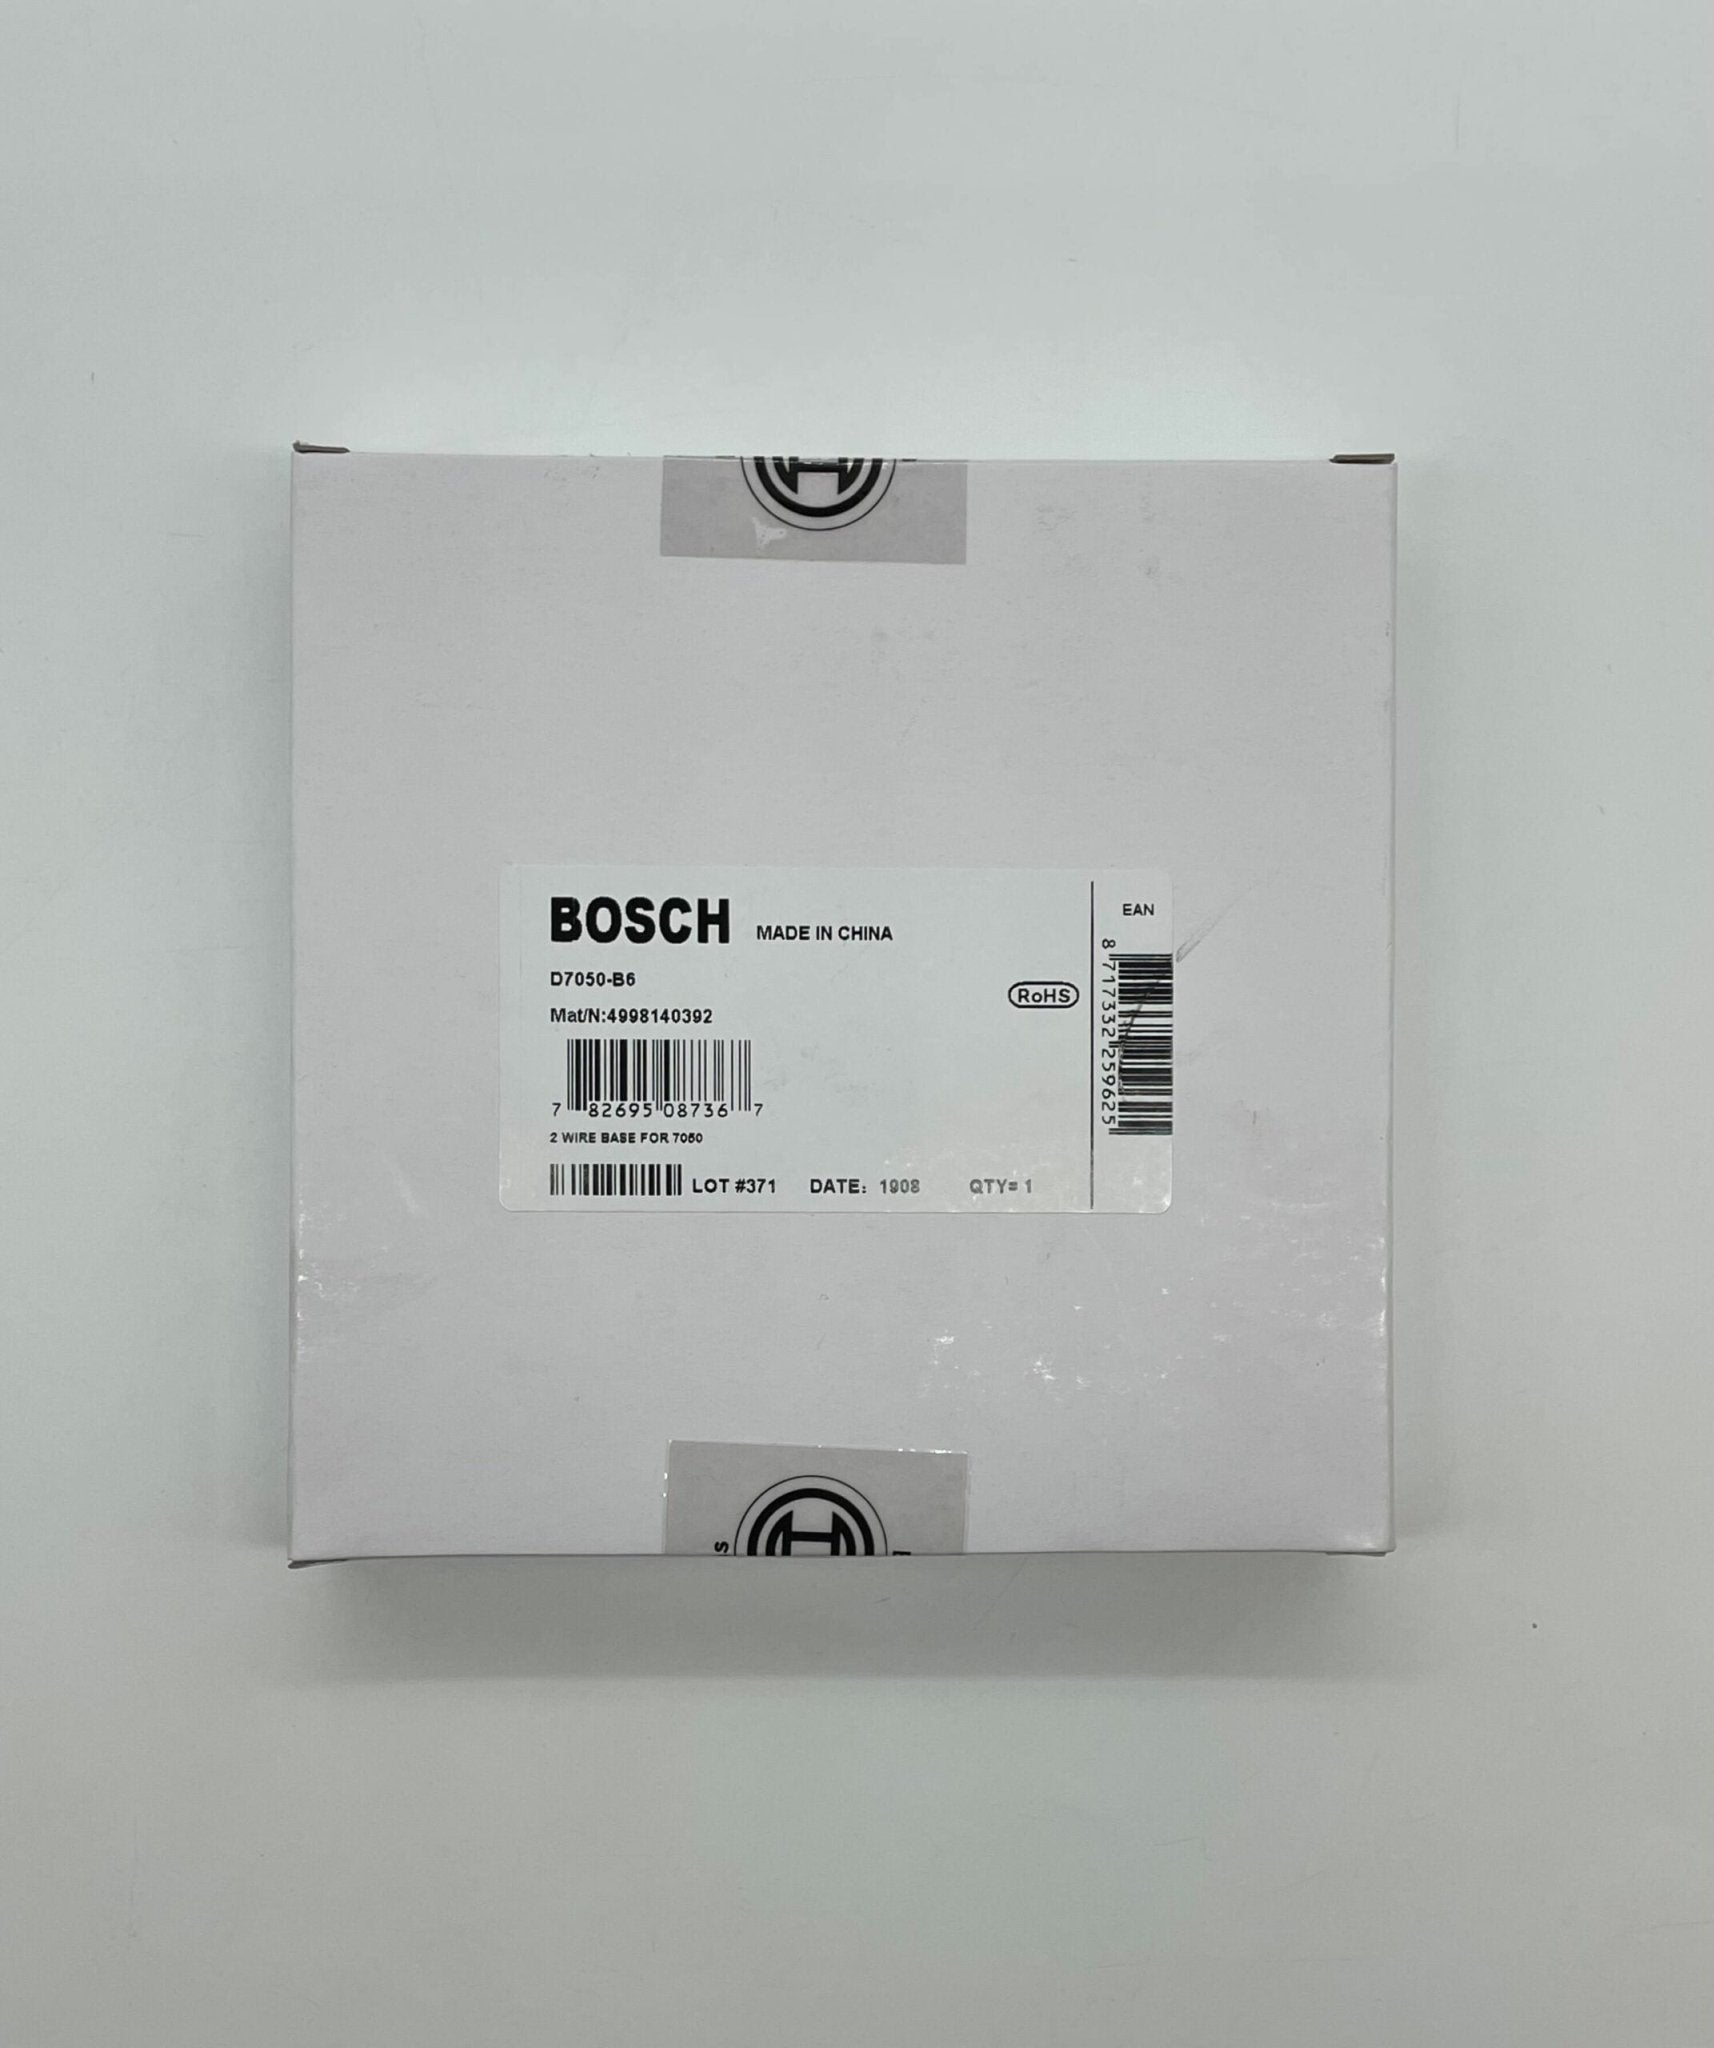 Bosch D7050-B6